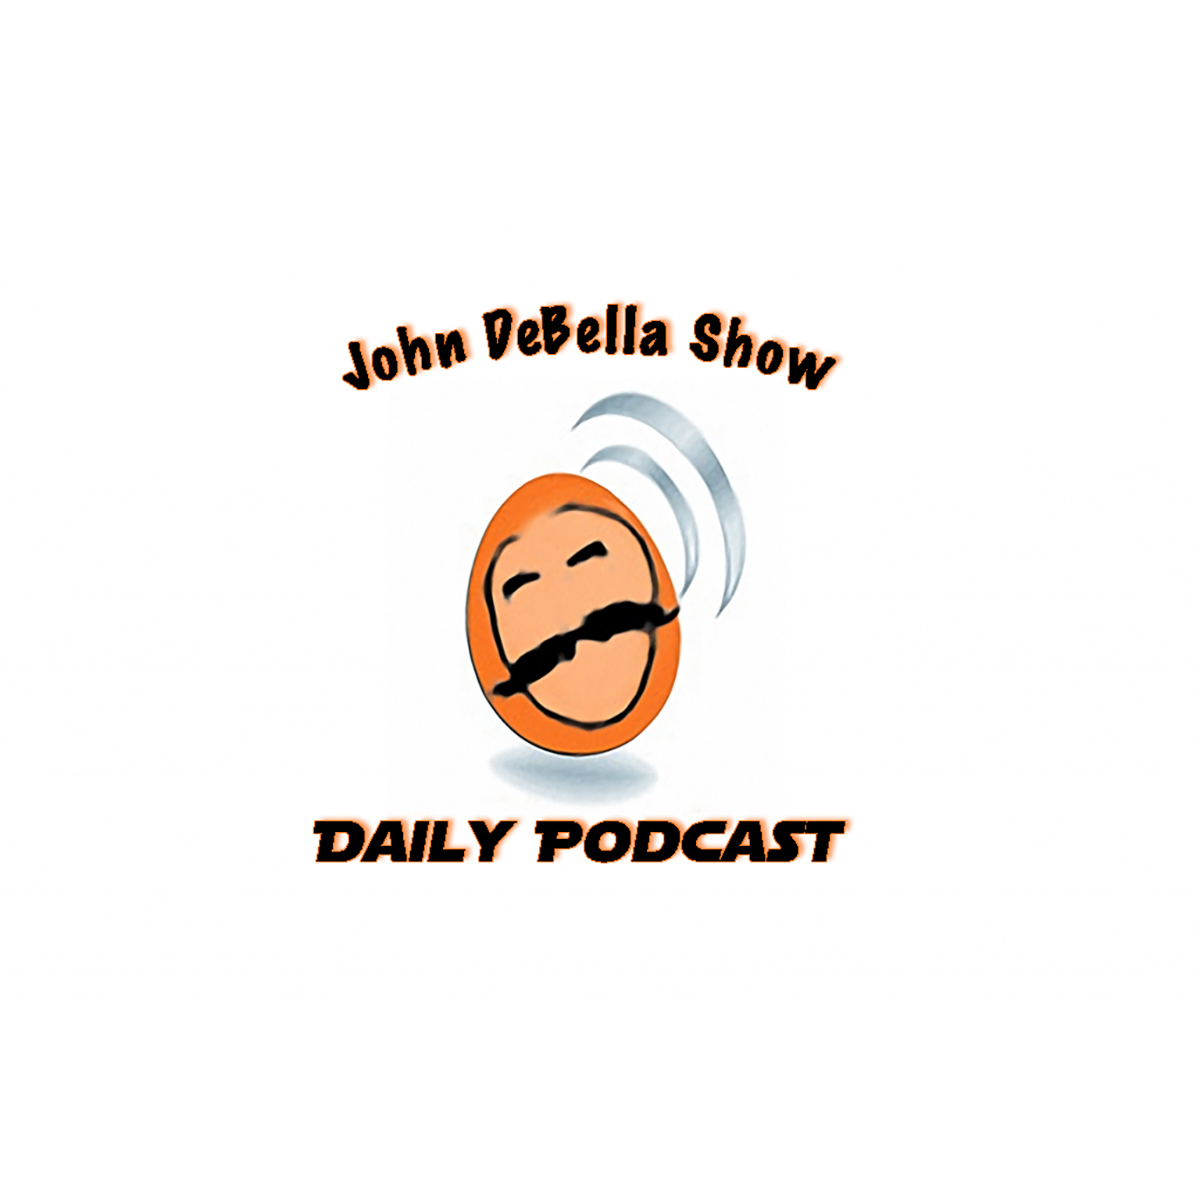 The John DeBella Show 41 & Done! Jerry Seinfeld in studio